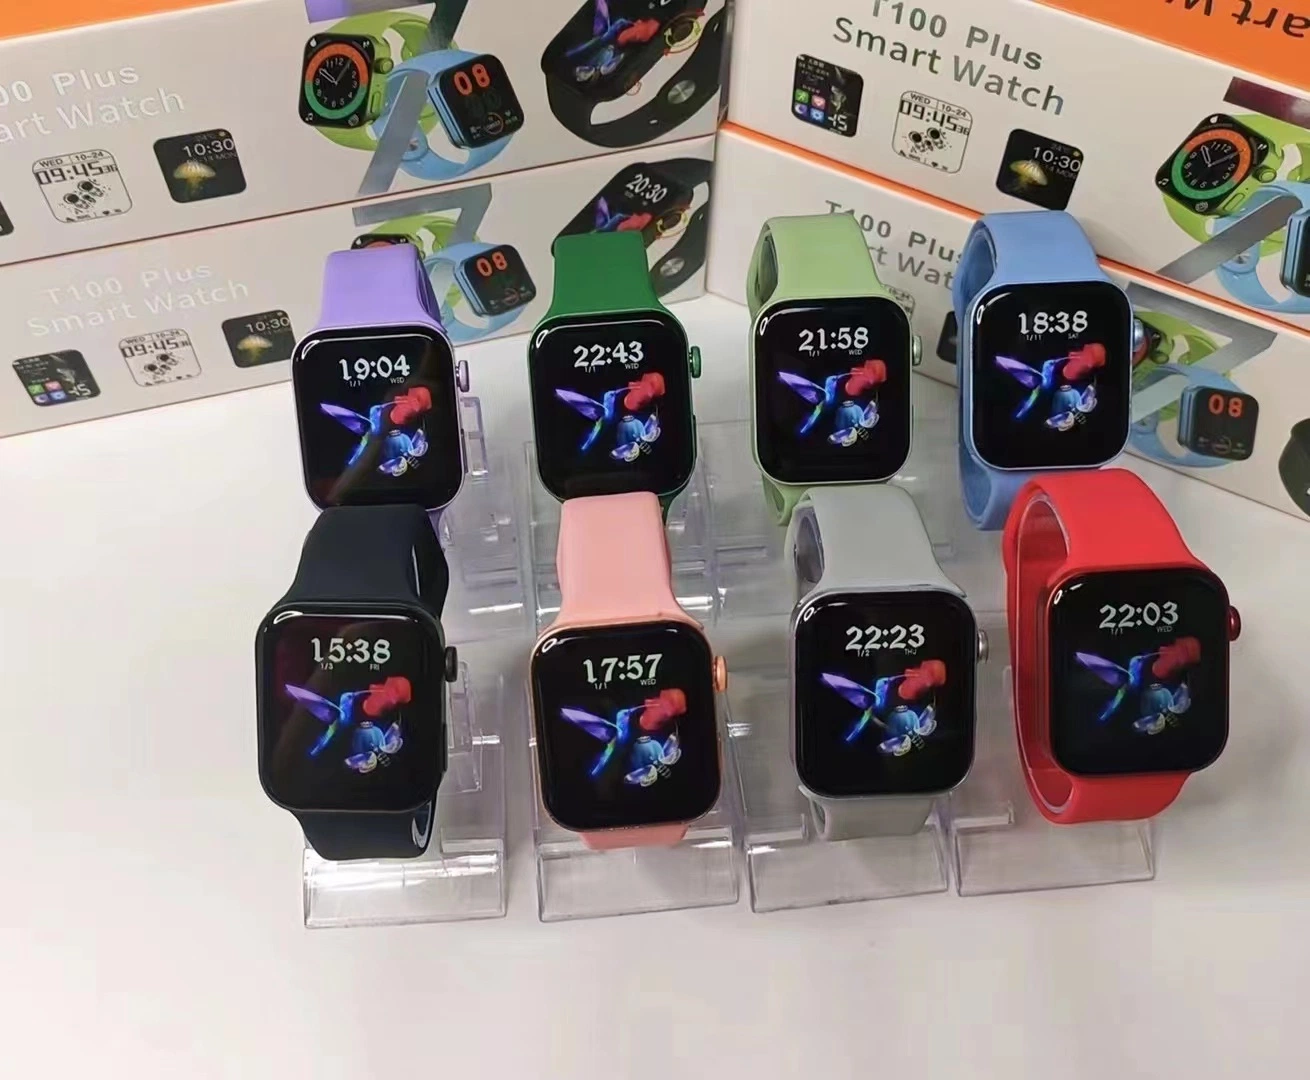 T100 плюс Fty оптовой смотреть 7 Беспроводной Smart смотреть спорт браслет Smartwatch Bluetooth телефона подарок наручные часы